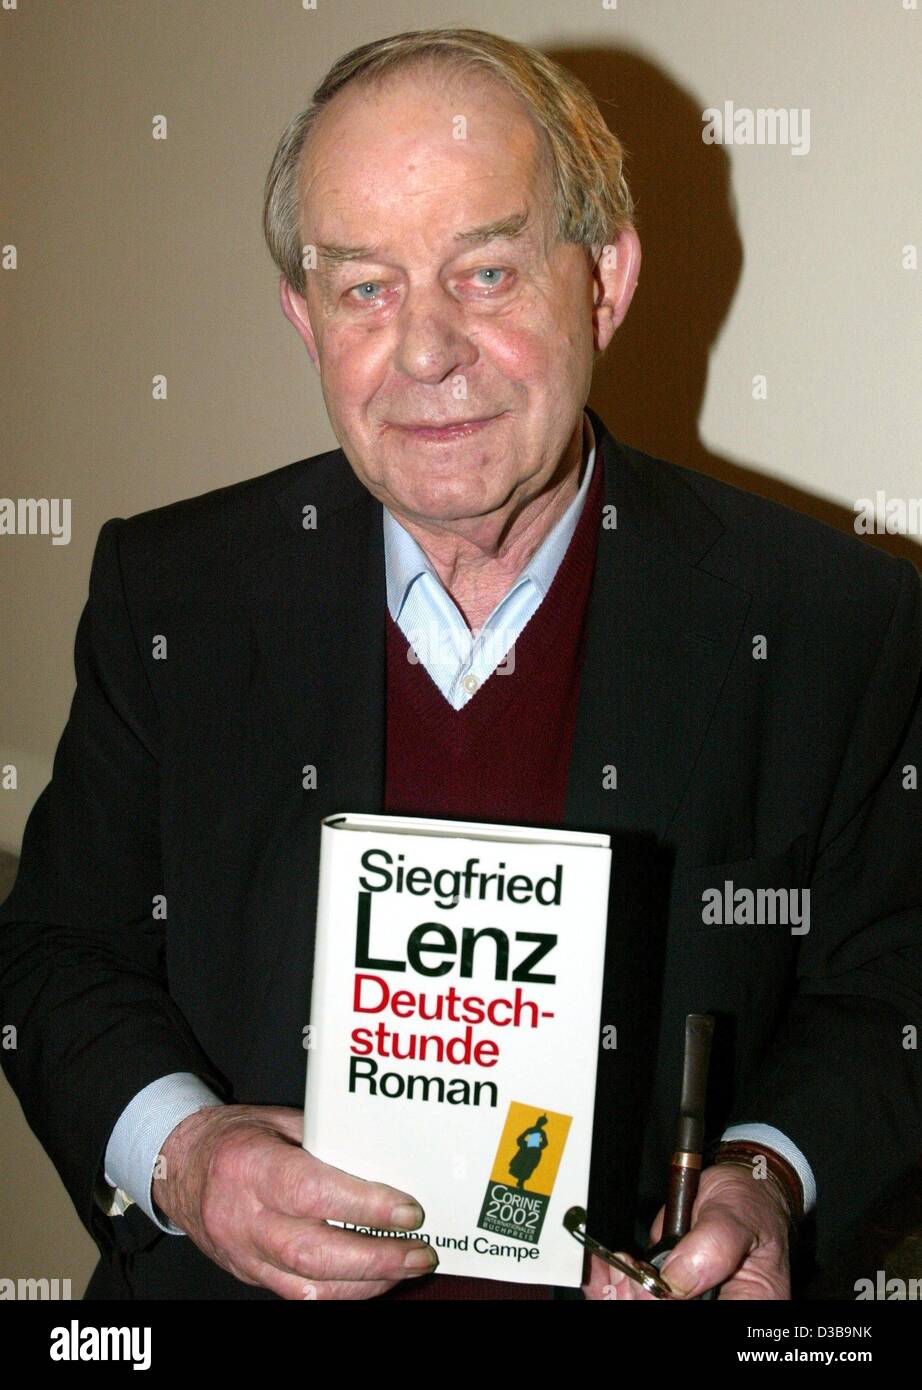 (Dpa) - autore tedesco Siegfried Lenz pone con una copia del suo romanzo 'Deutschstunde' ('la lezione di tedesco') nel corso di una conferenza stampa a Monaco di Baviera il 6 novembre 2002. In serata Lenz sarà aggiudicato il Libro Internazionale Premio Corine 2002 per 'Deutschstunde'. Quest'anno il premio è stato assegnato a otto inte Foto Stock